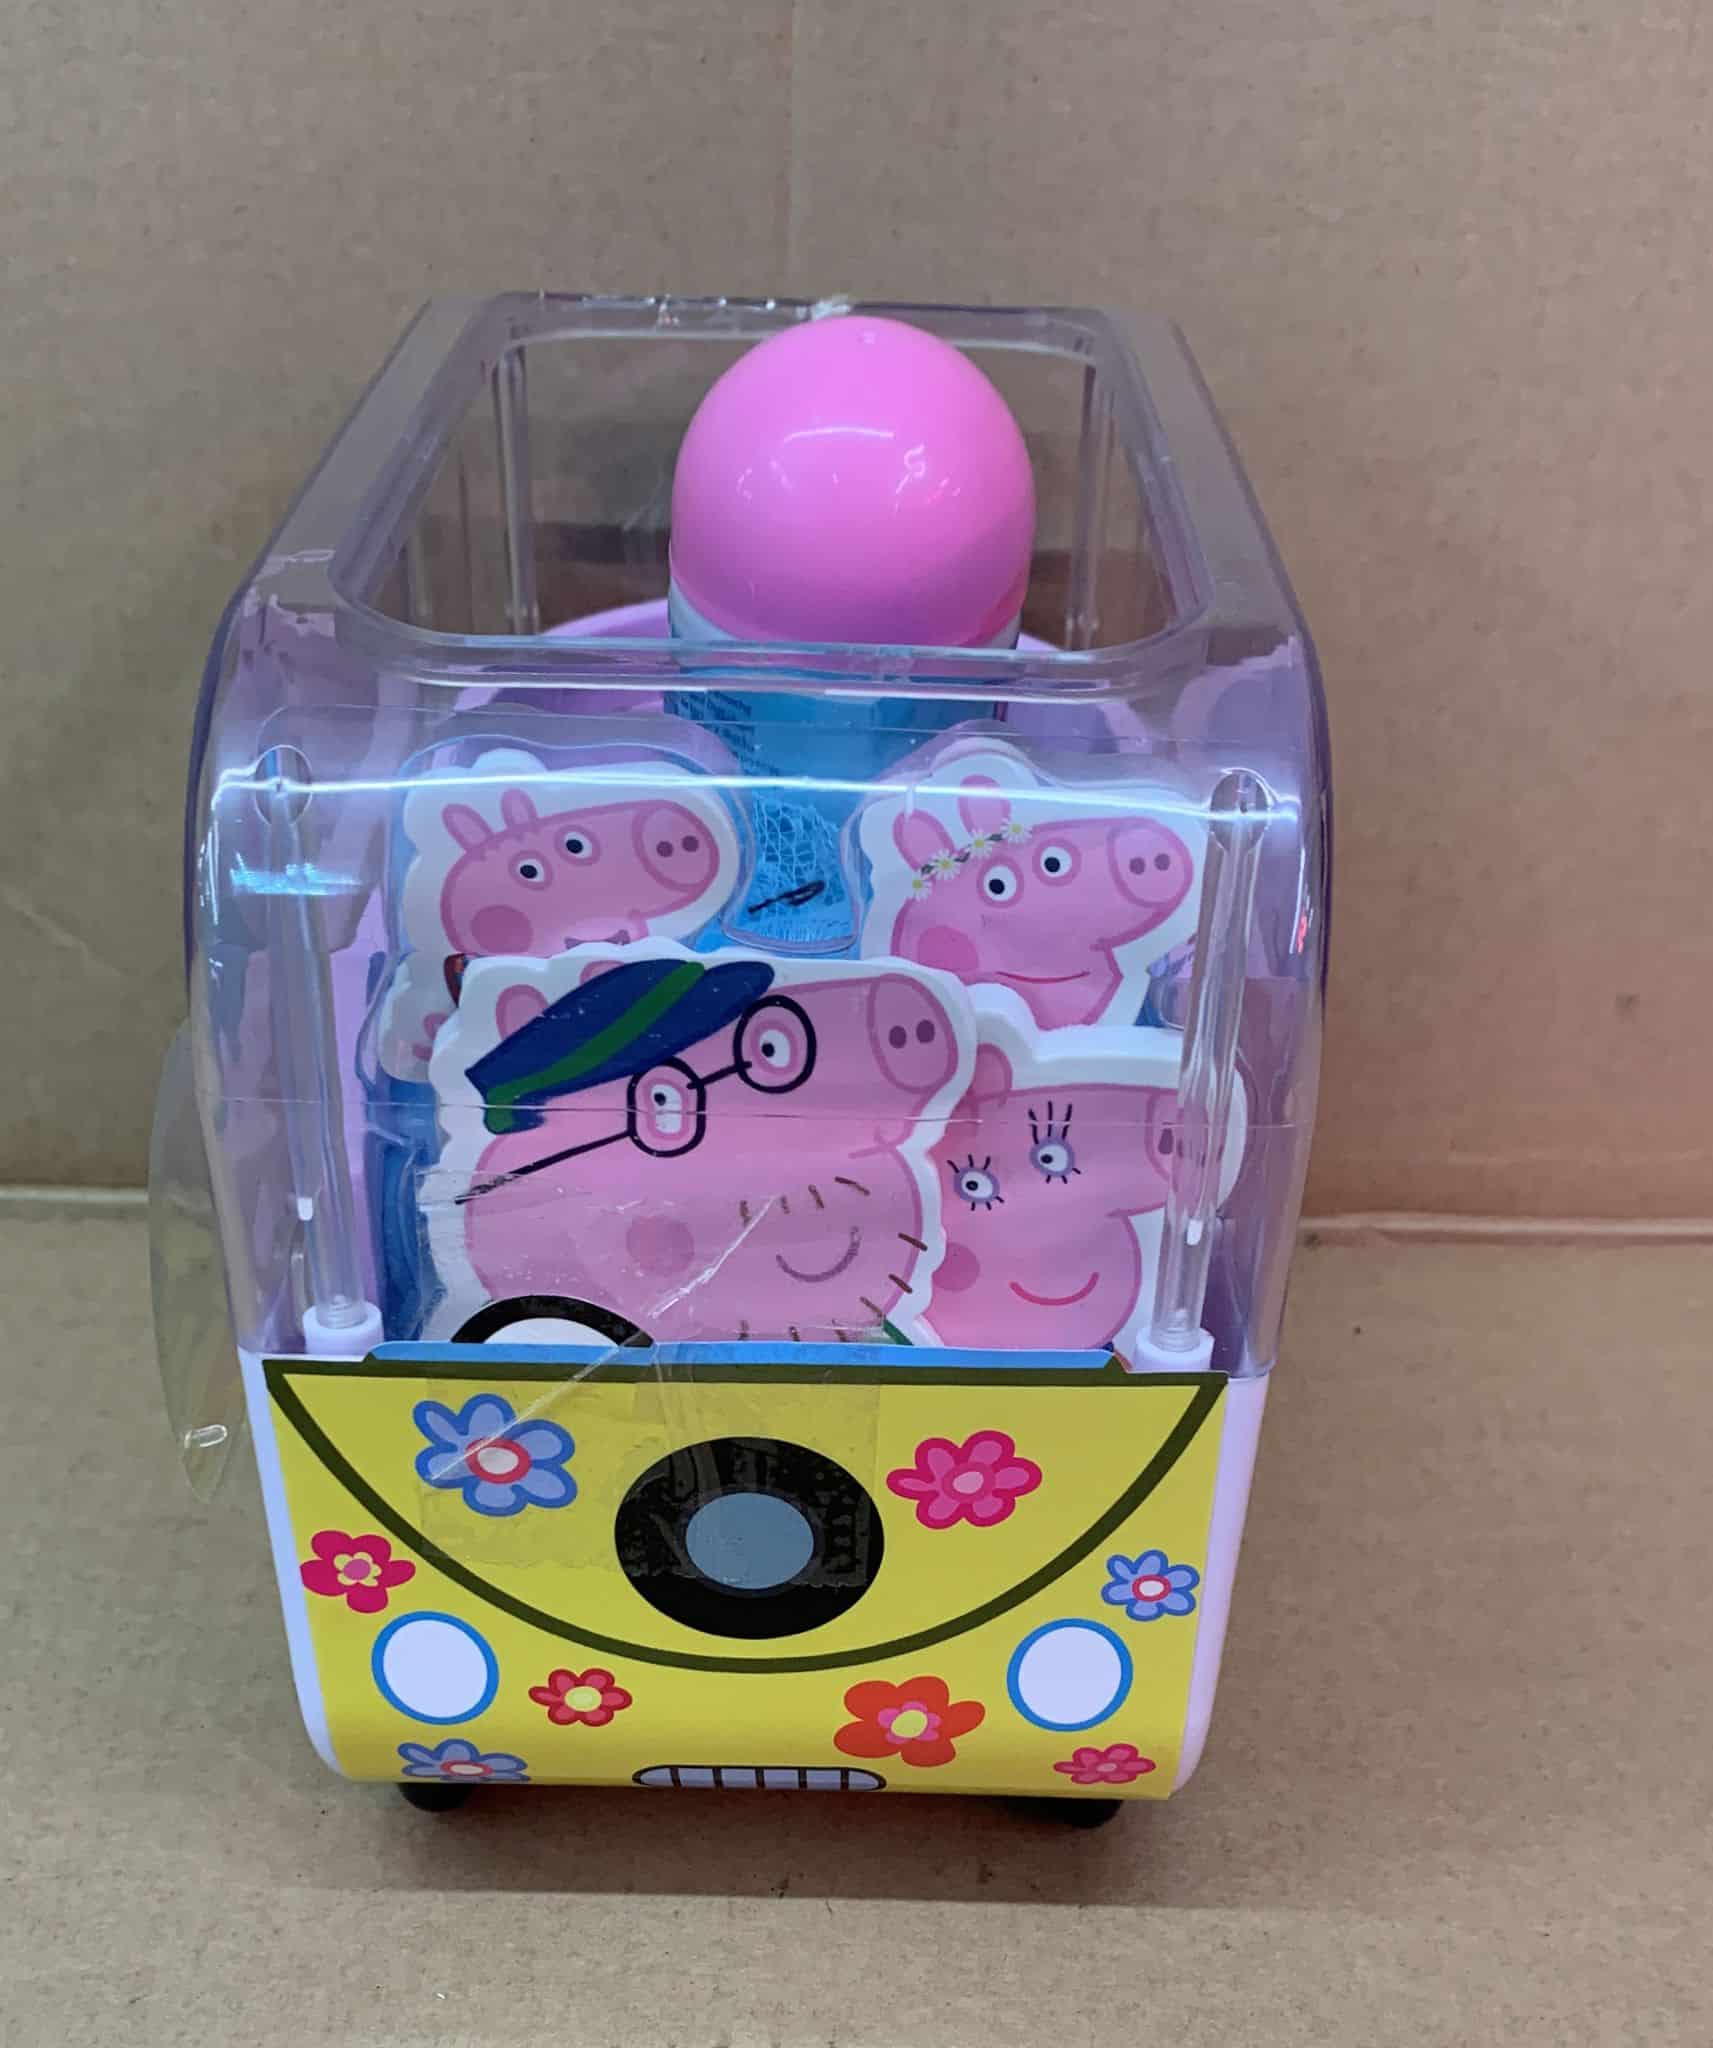 Peppa Pig Campervan Bath Gift Set-Bath Toy-Children’s Gift Set-5612